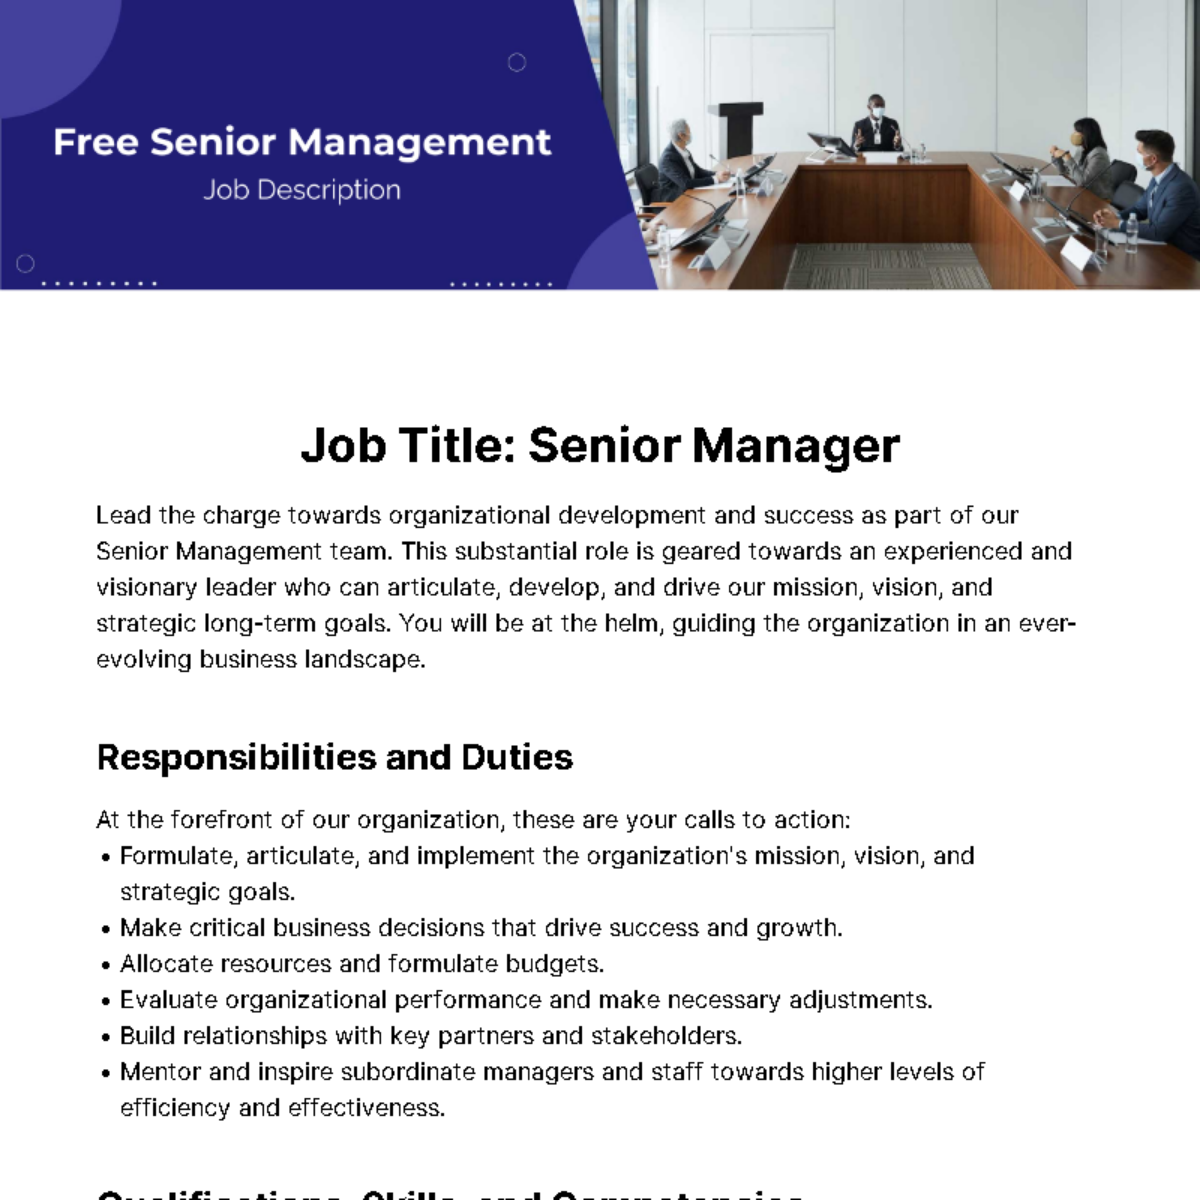 Senior Management Job Description Template